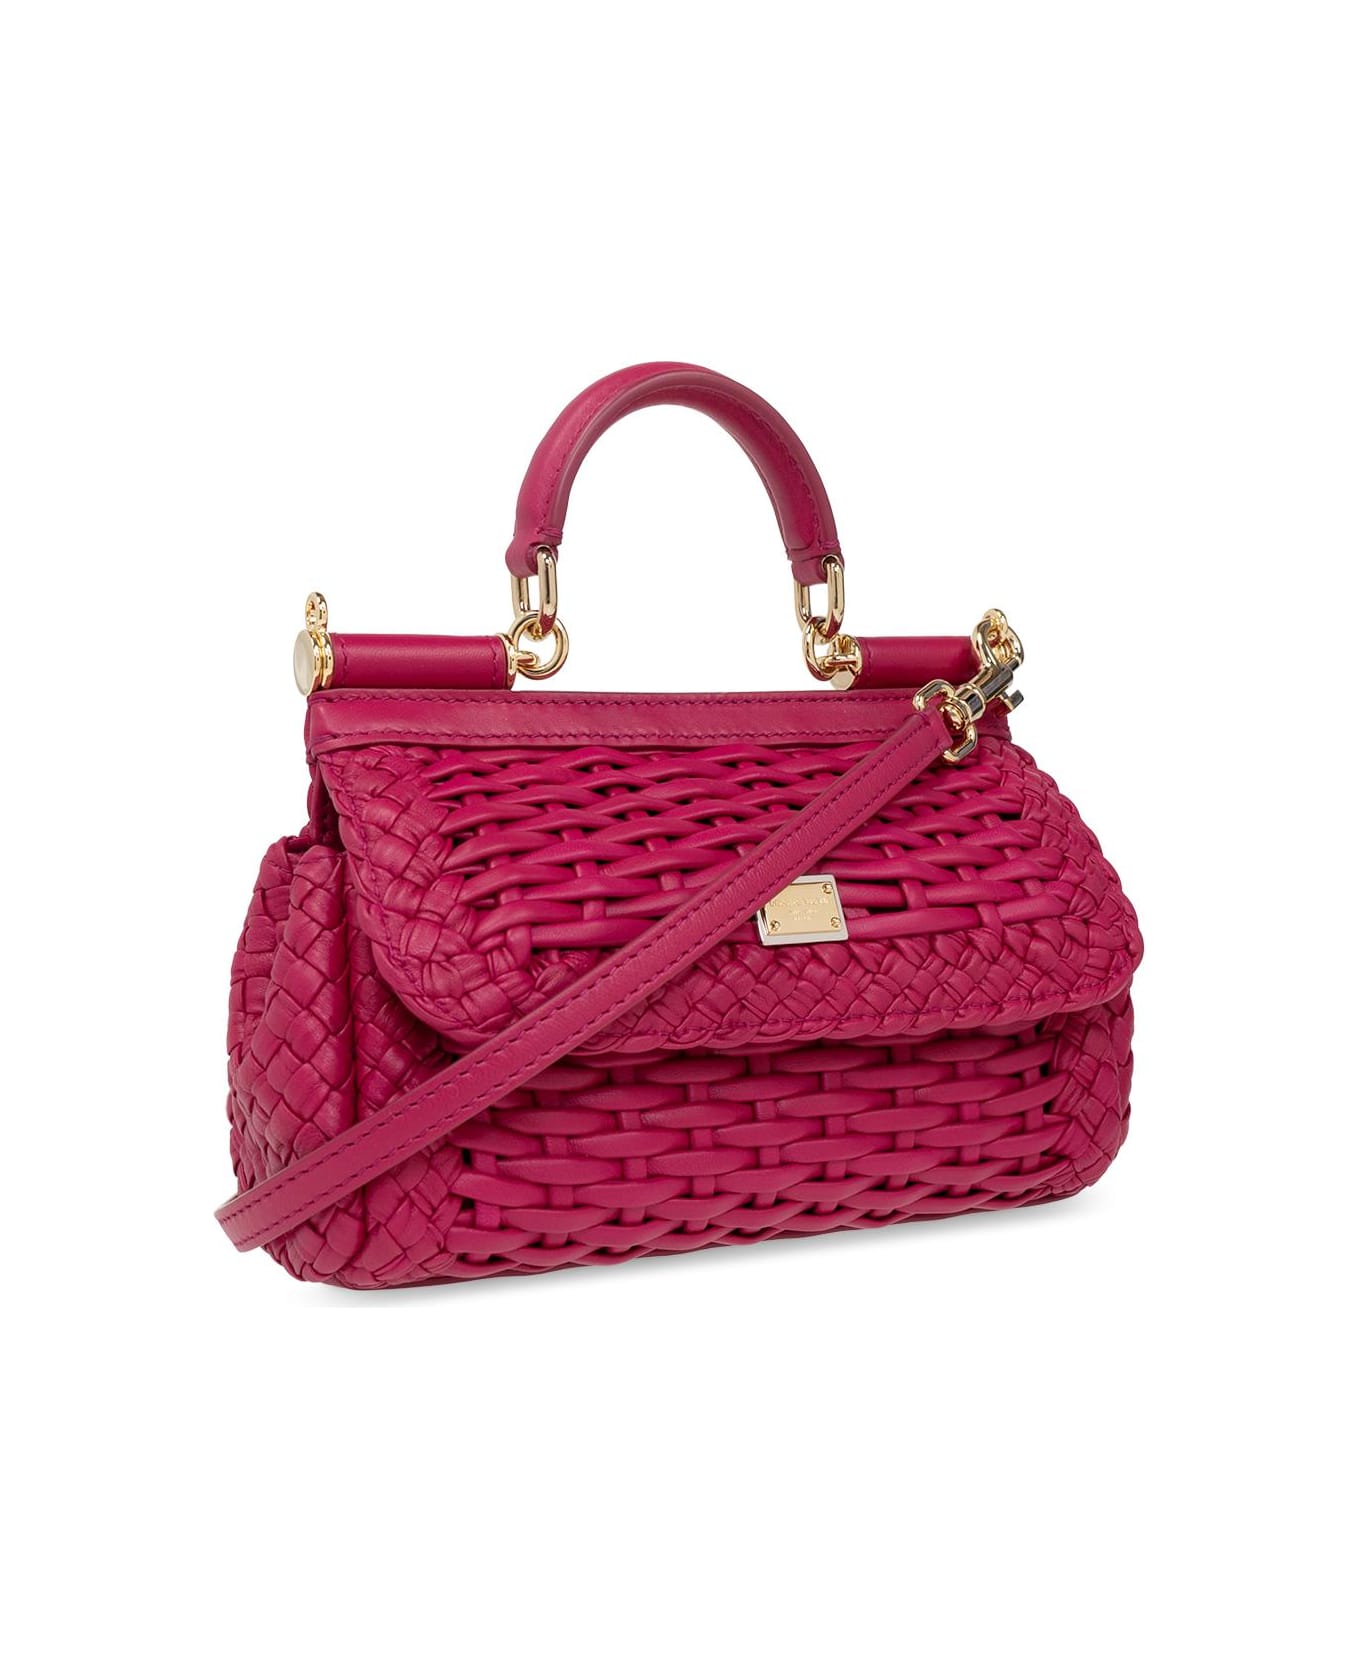 Dolce & Gabbana 'sicily Small' Shoulder Bag - Red